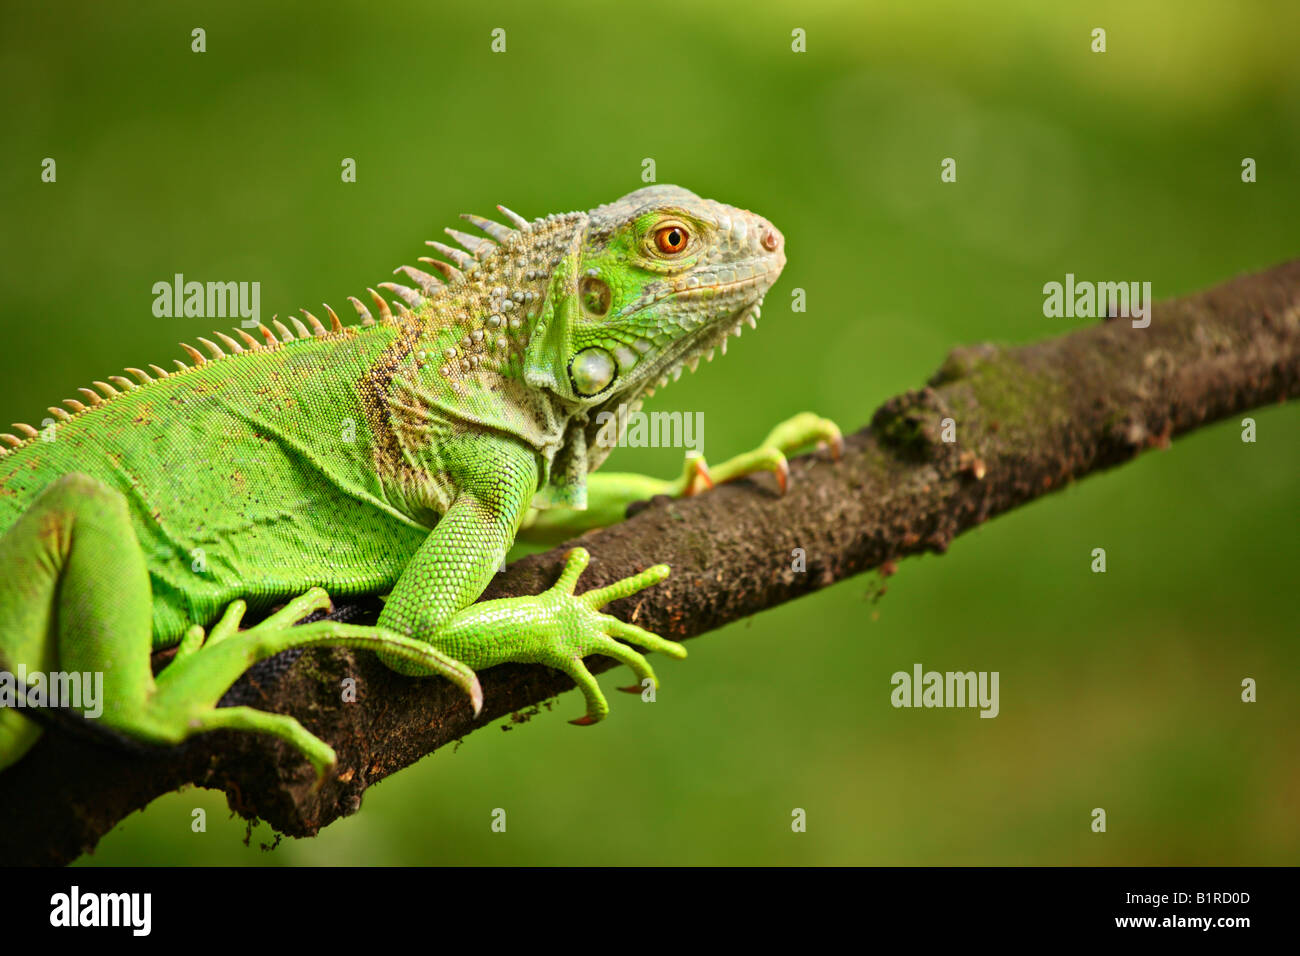 Iguana on a branch Stock Photo